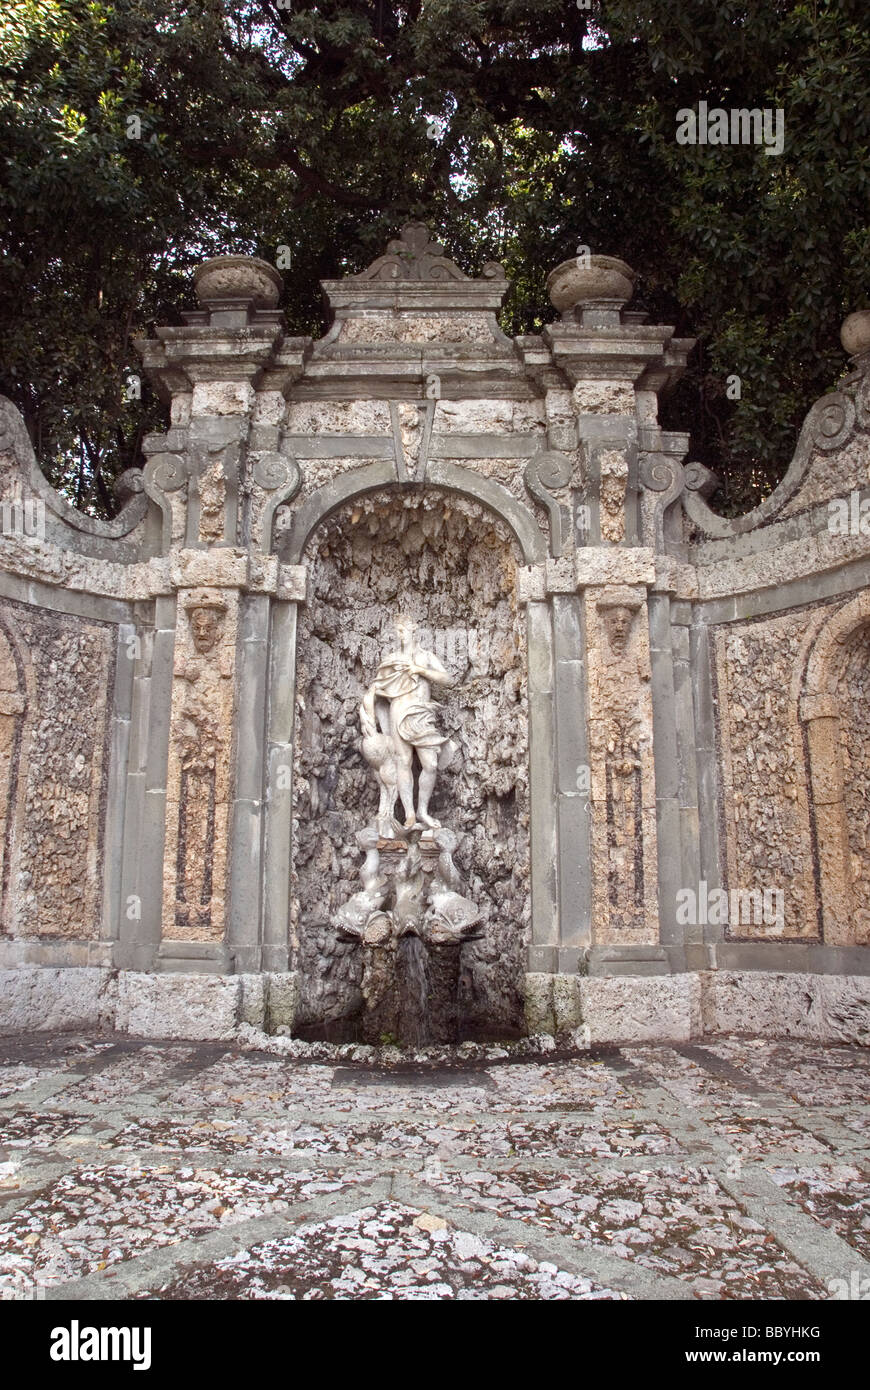 La statuaria in piscina Parco Villa Reale Foto Stock